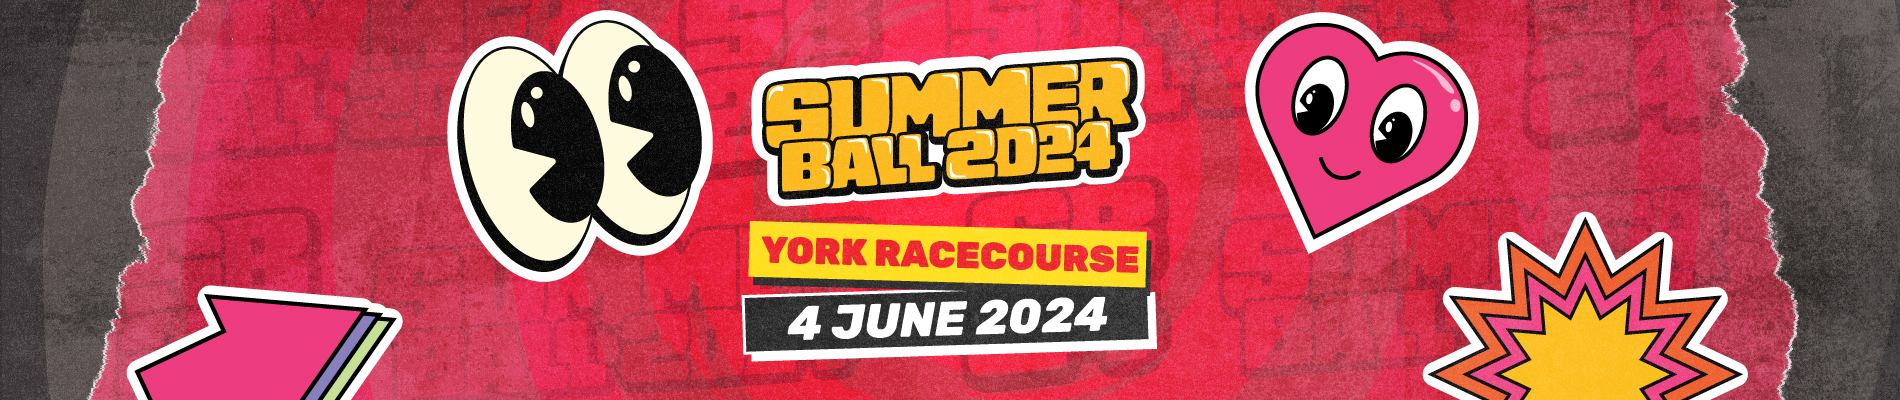 Summer Ball 2024